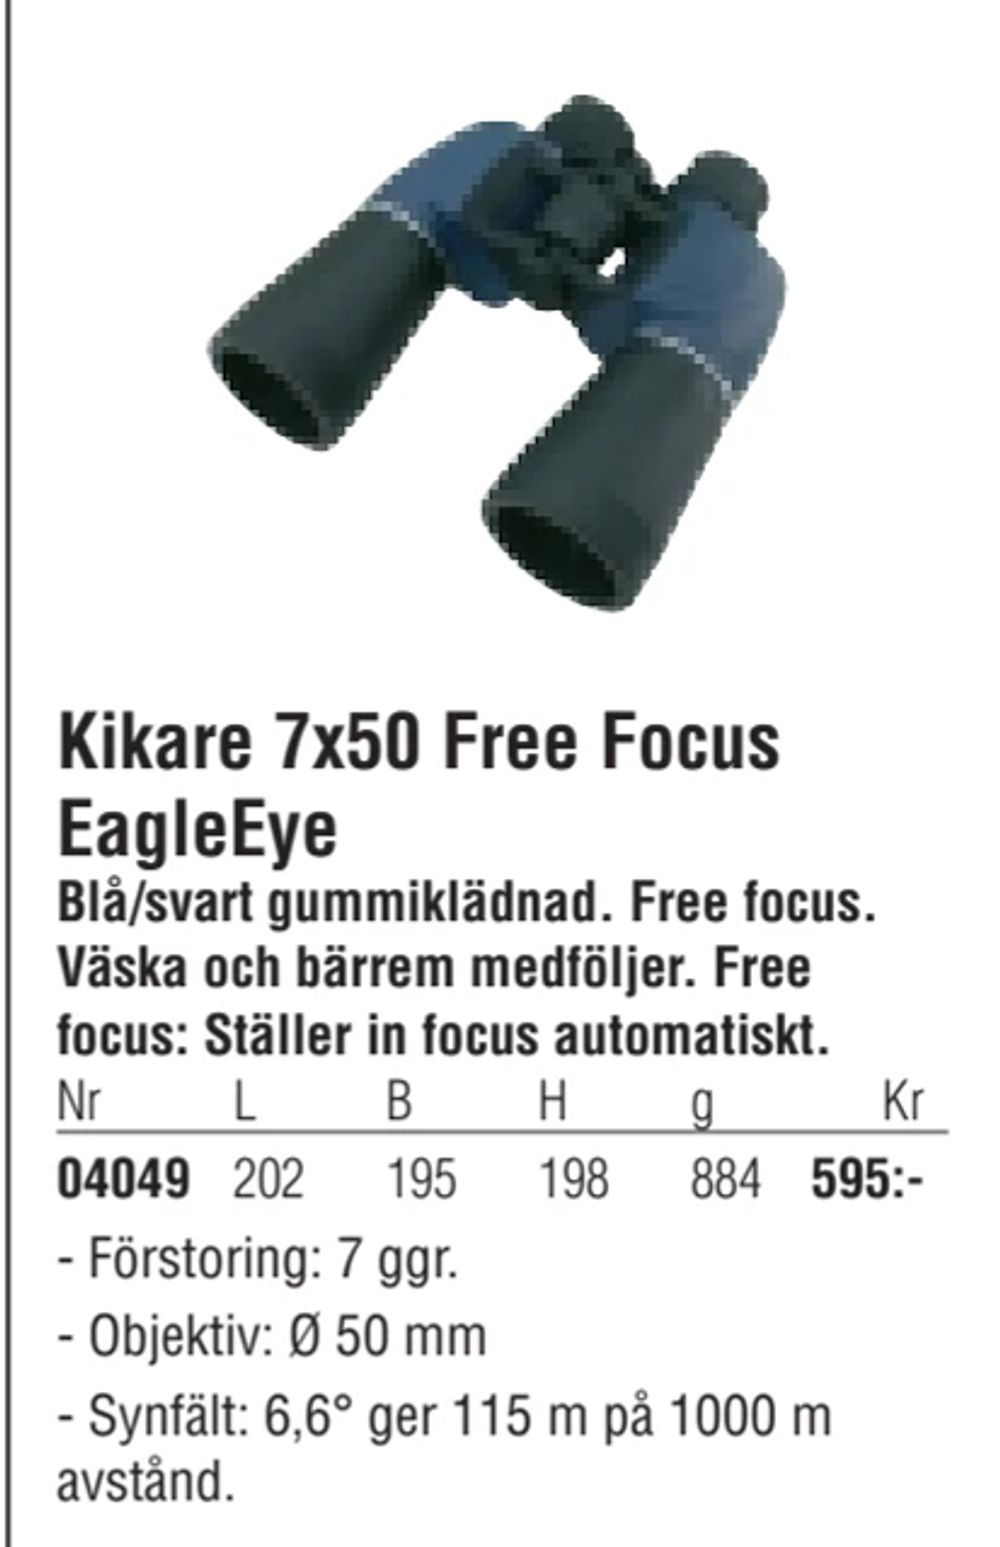 Erbjudanden på Kikare 7x50 Free Focus EagleEye från Erlandsons Brygga för 595 kr